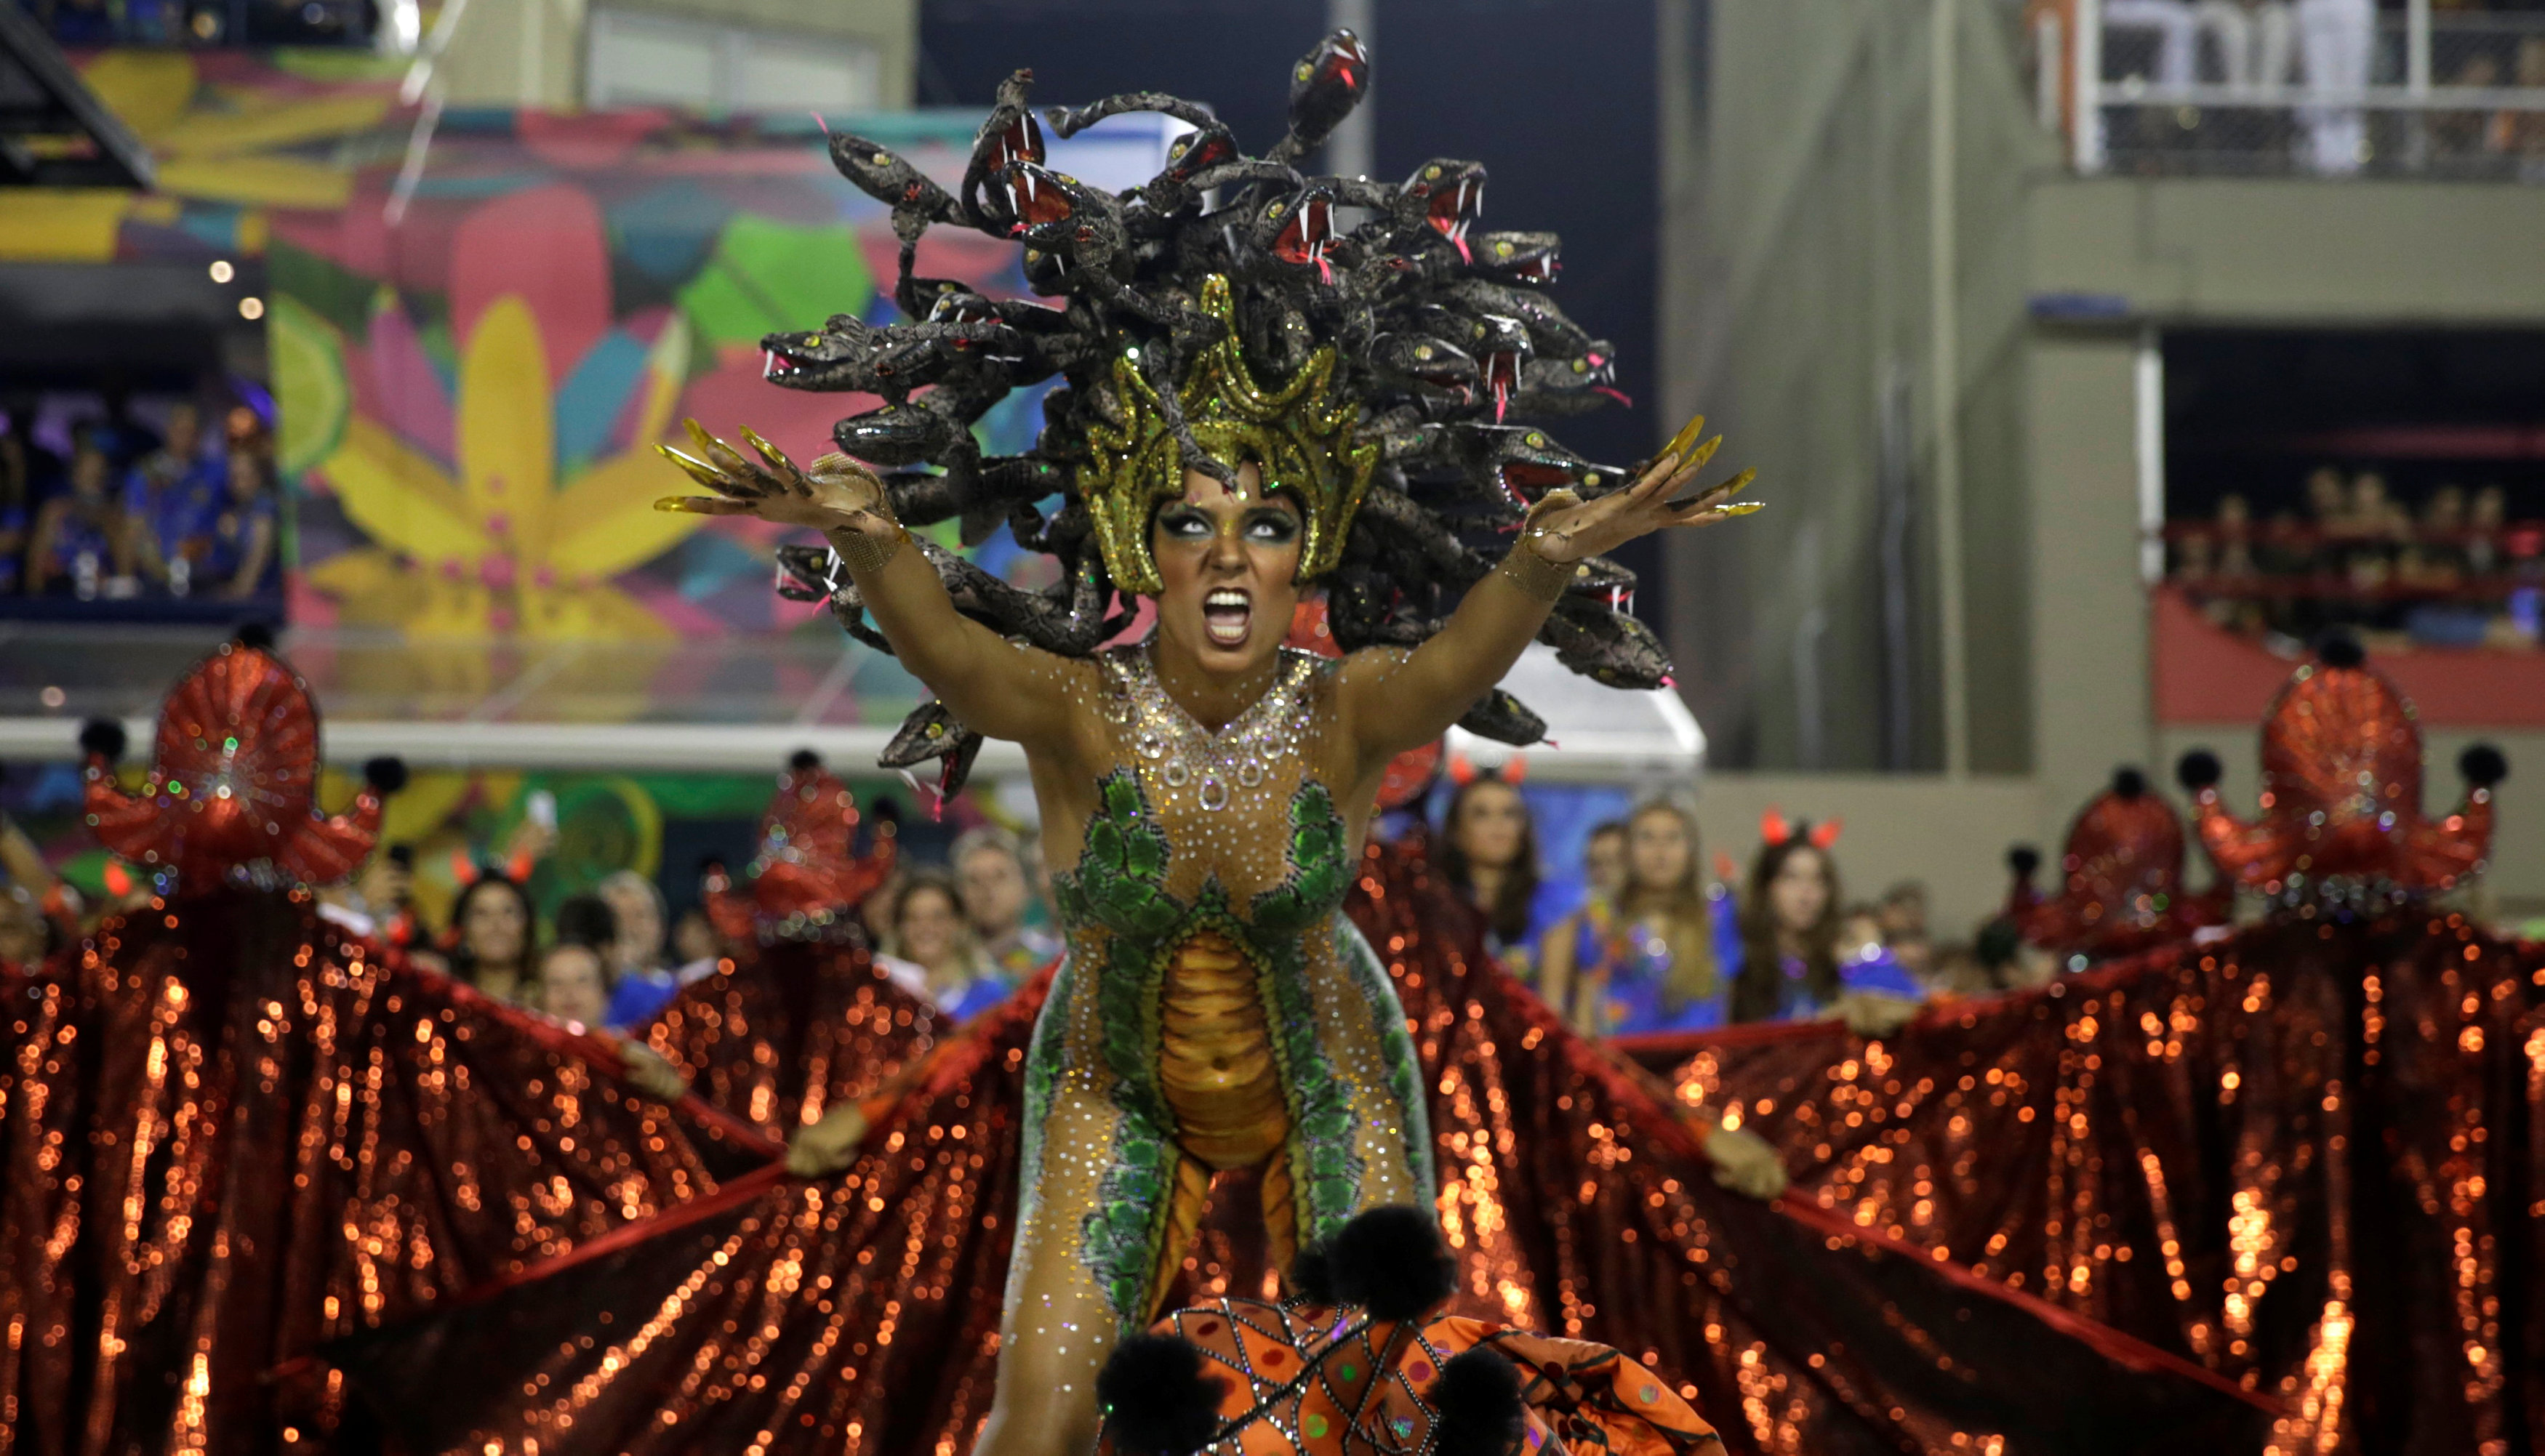 عروض فنية خاصة بكرنفال البرازيل الشعبى لإحياء رقصة السامبا